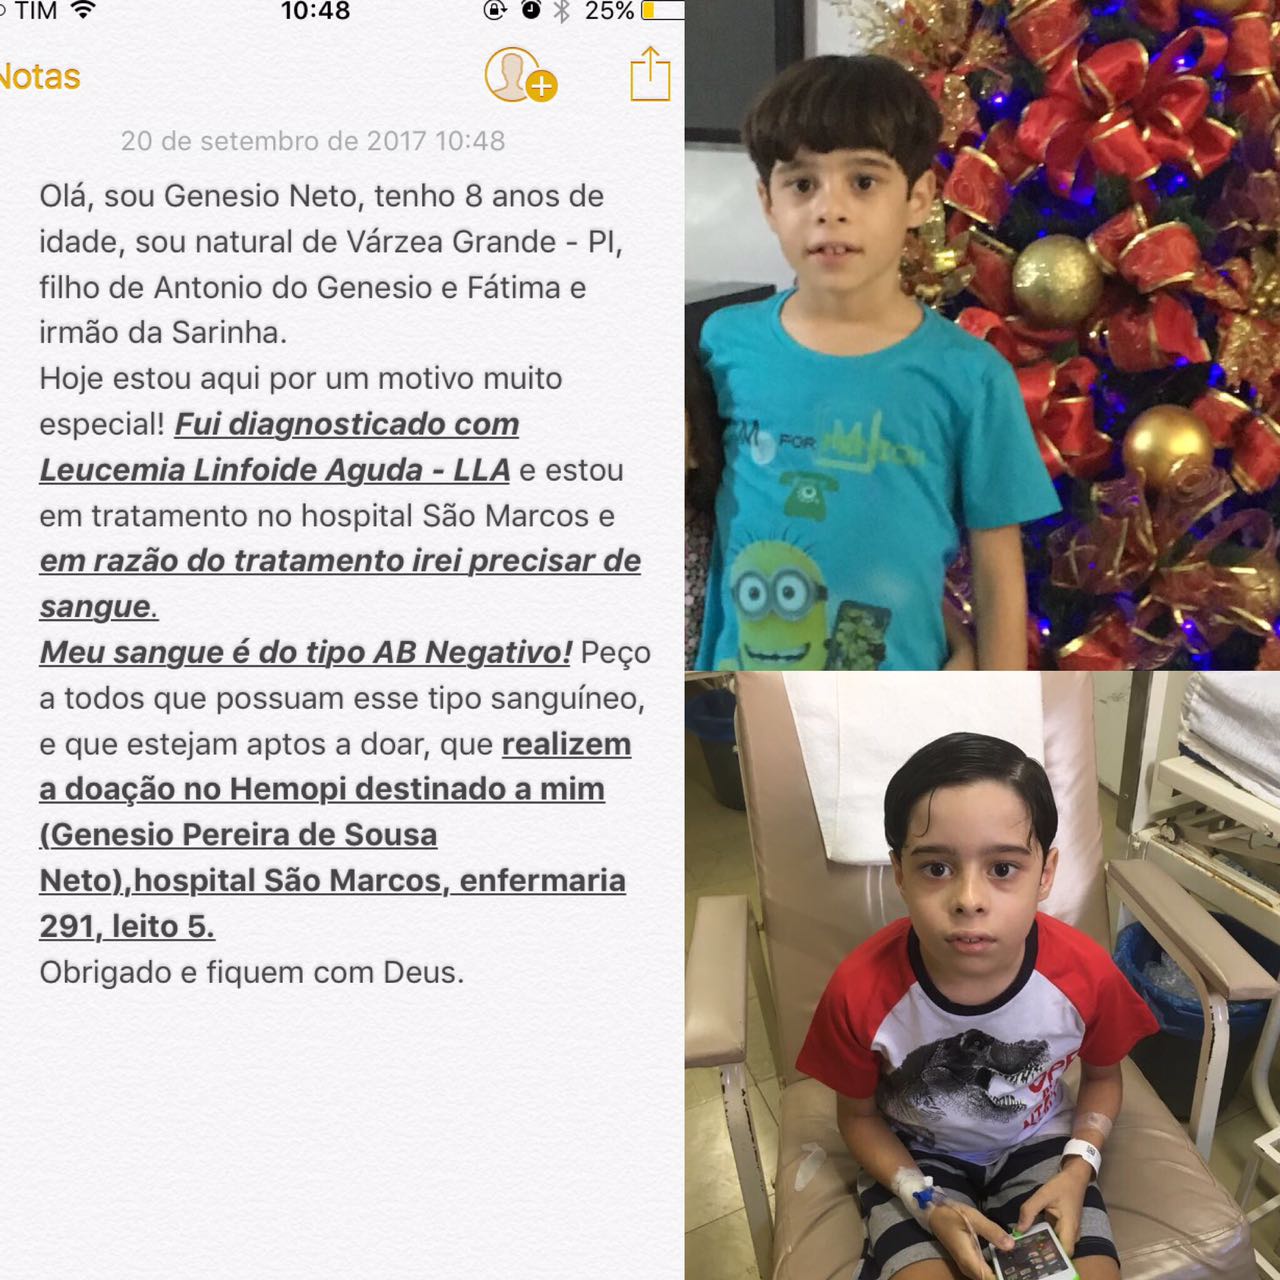 O garoto Genésio Neto está realizando um tratamento austero no Hospital São Marcos